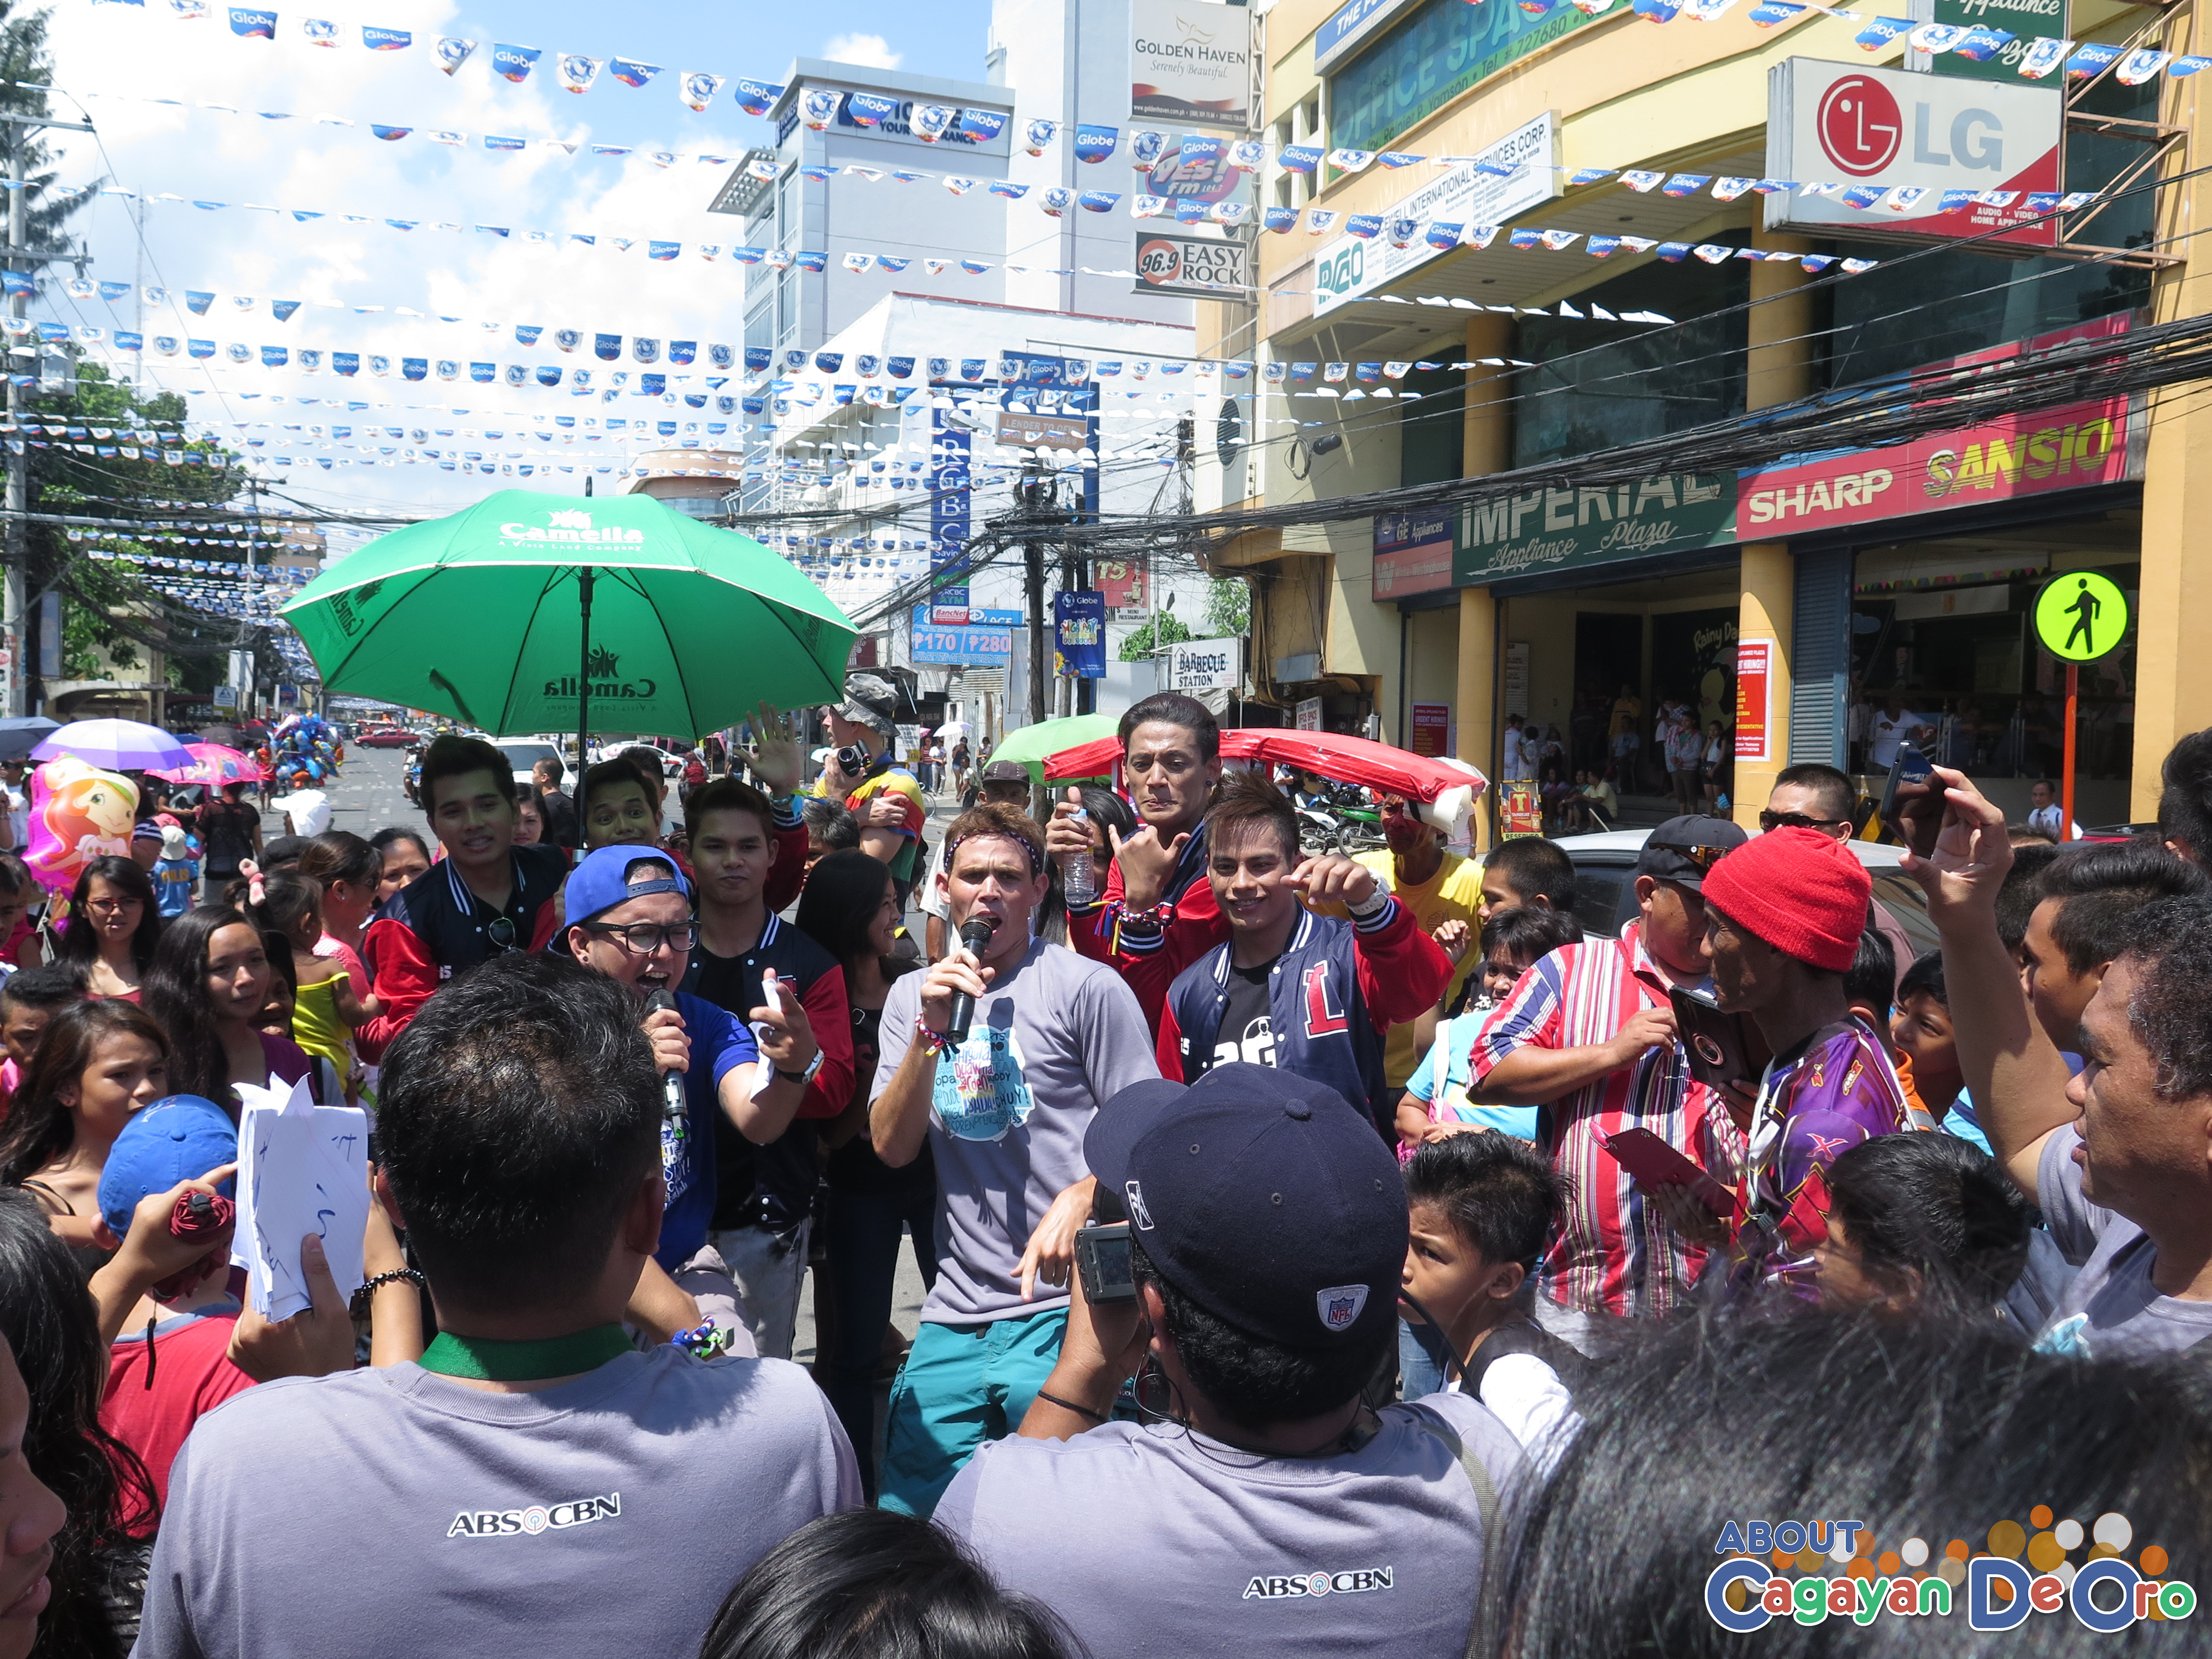 MagTV Na shooting at Cagayan de Oro The Higalas Parade of Floats and Icons 2015